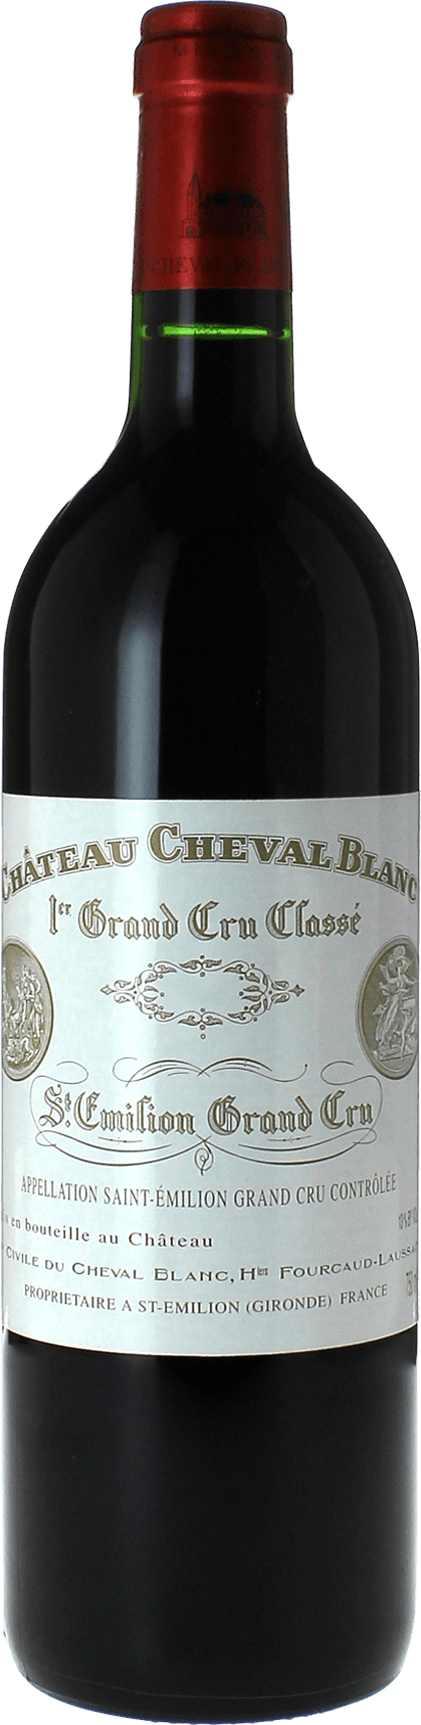 Cheval blanc st emilion 2006 1er Grand cru class A Saint-Emilion, Bordeaux rouge